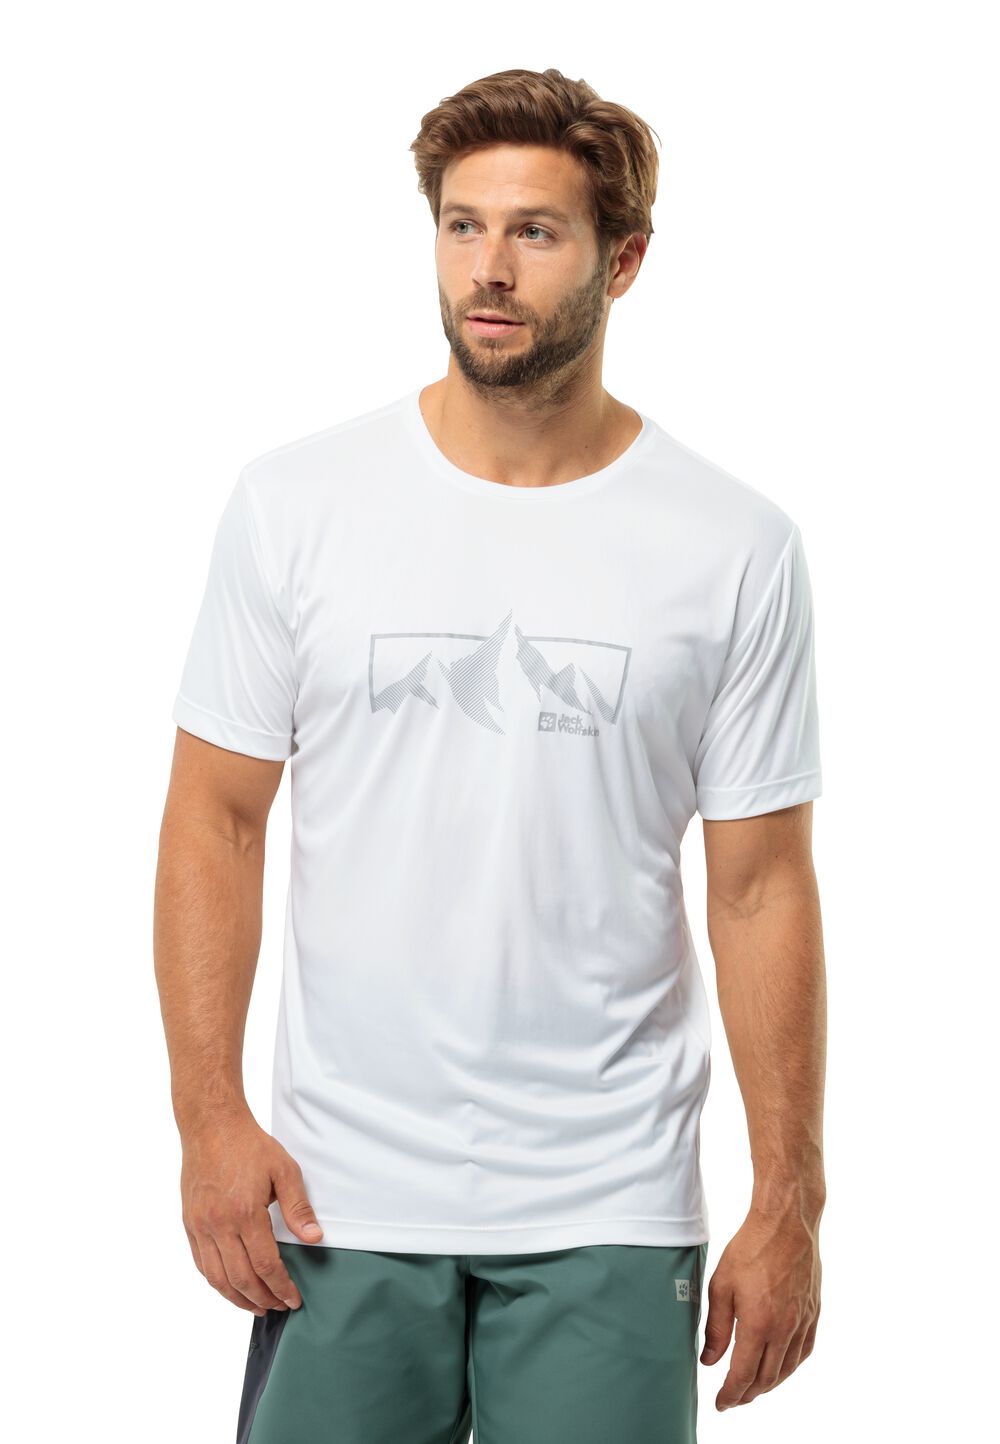 Jack Wolfskin Funktionsshirt Herren Peak Graphic T-Shirt Men XL weiß stark white von Jack Wolfskin